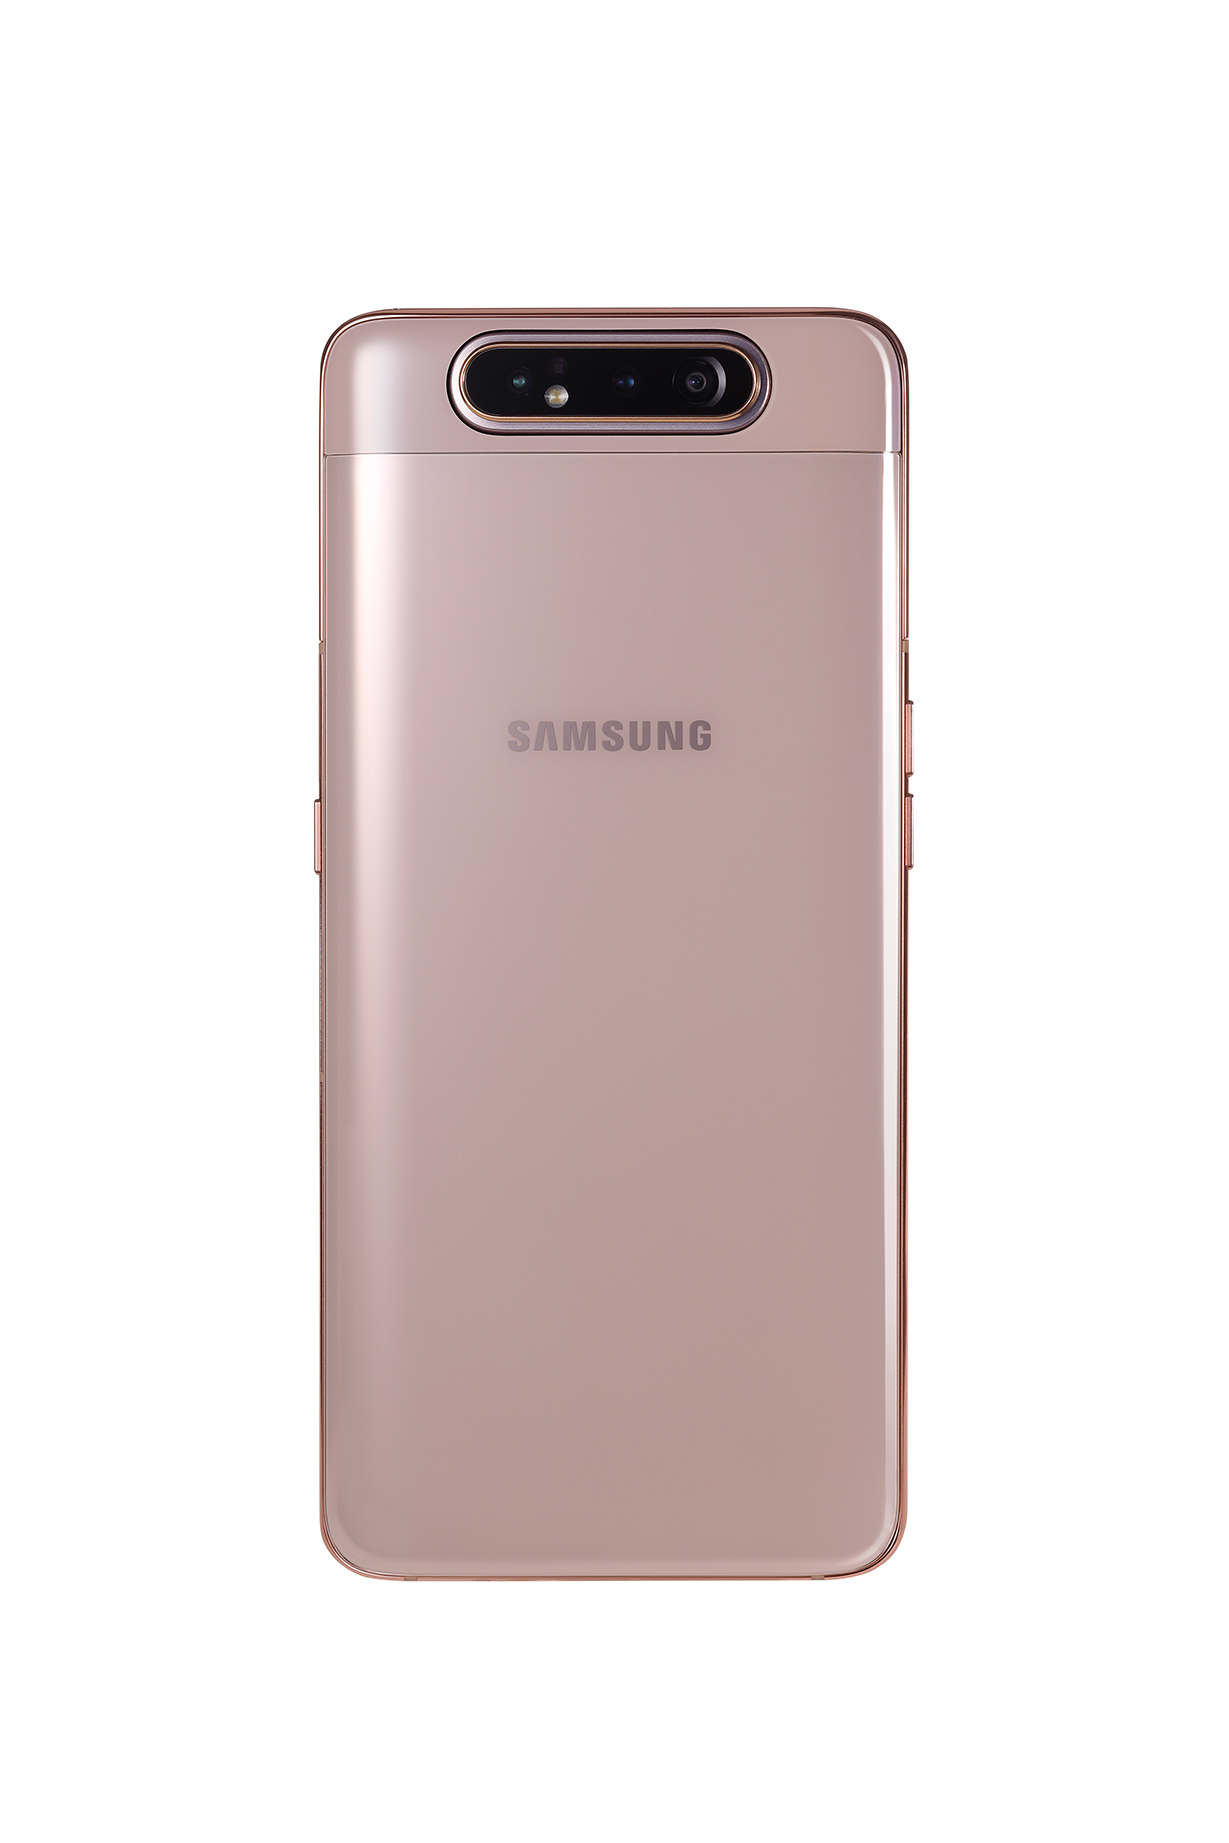 Galaxy A80 lên kệ ngày 6/7, giá 14,99 triệu đồng 3